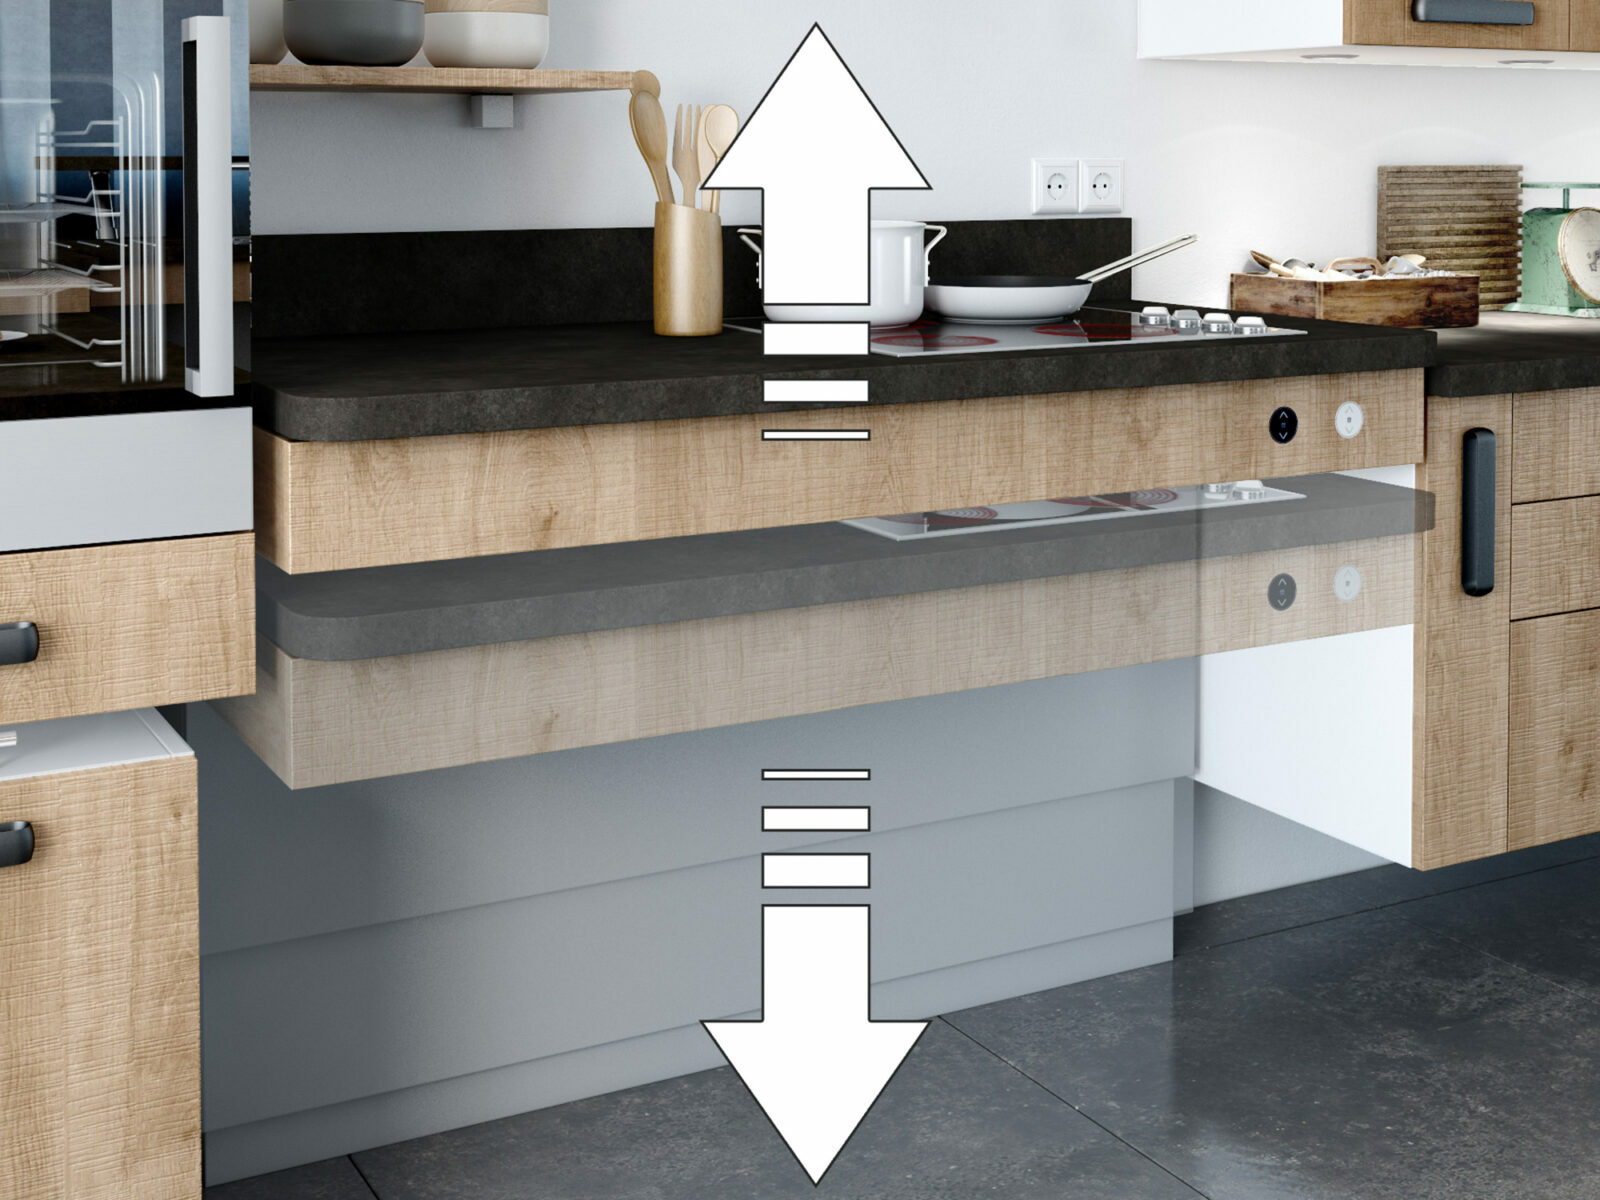 Cuisine moderne avec tiroirs ouverts révélant des rangements organisés, mettant en valeur un design minimaliste et efficace adapté à la mobilité réduite.